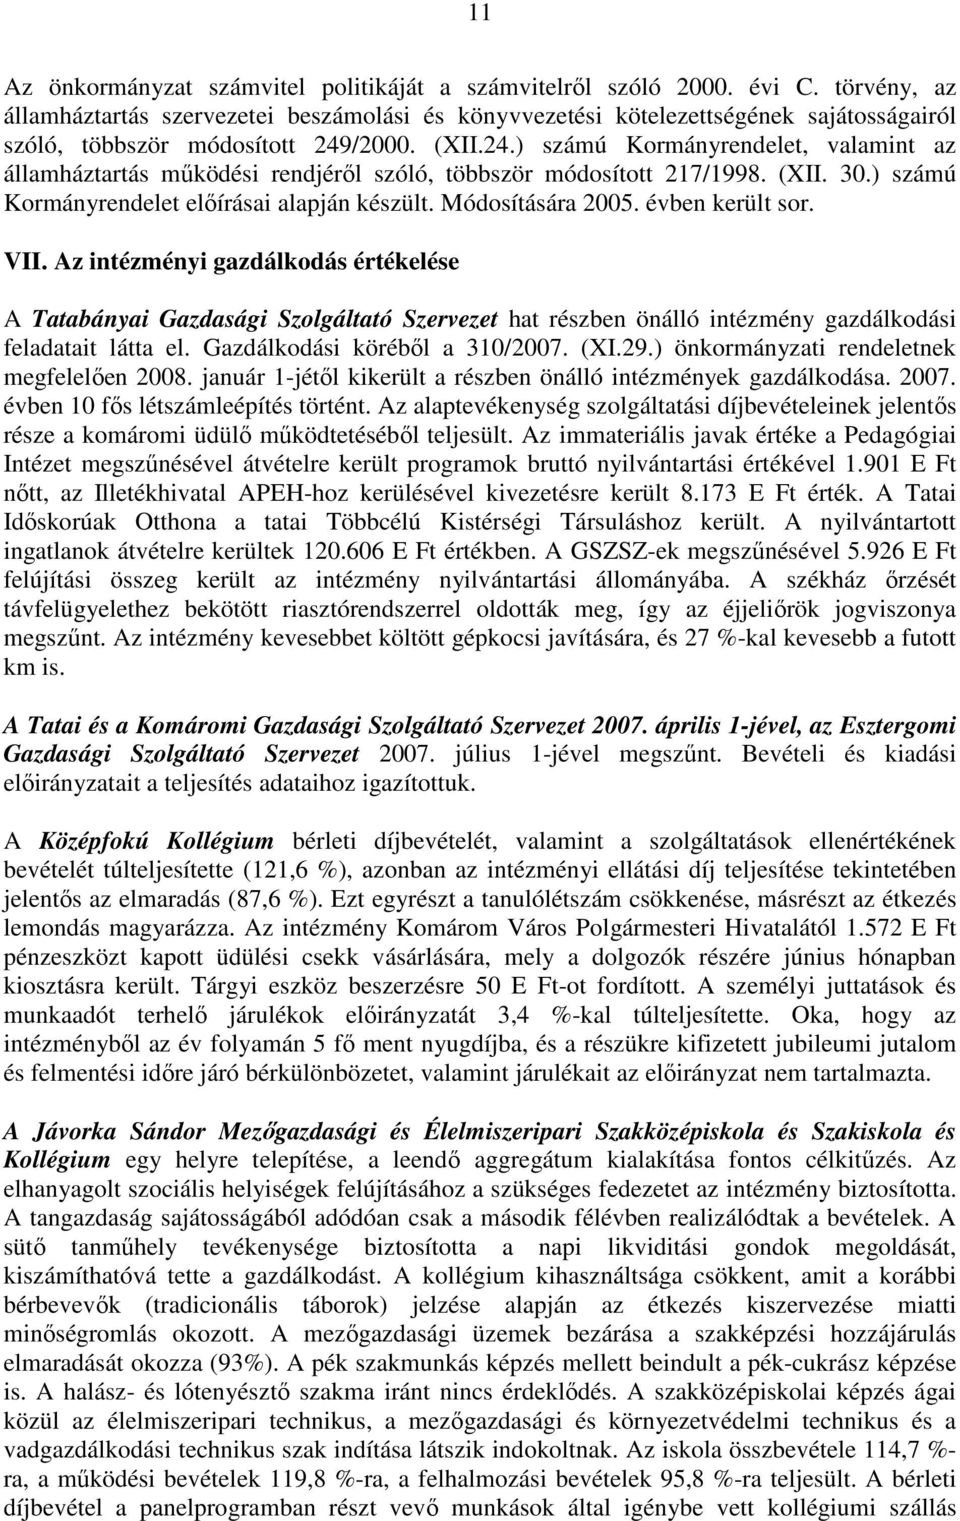 /2000. (XII.24.) számú Kormányrendelet, valamint az államháztartás mőködési rendjérıl szóló, többször módosított 217/1998. (XII. 30.) számú Kormányrendelet elıírásai alapján készült.